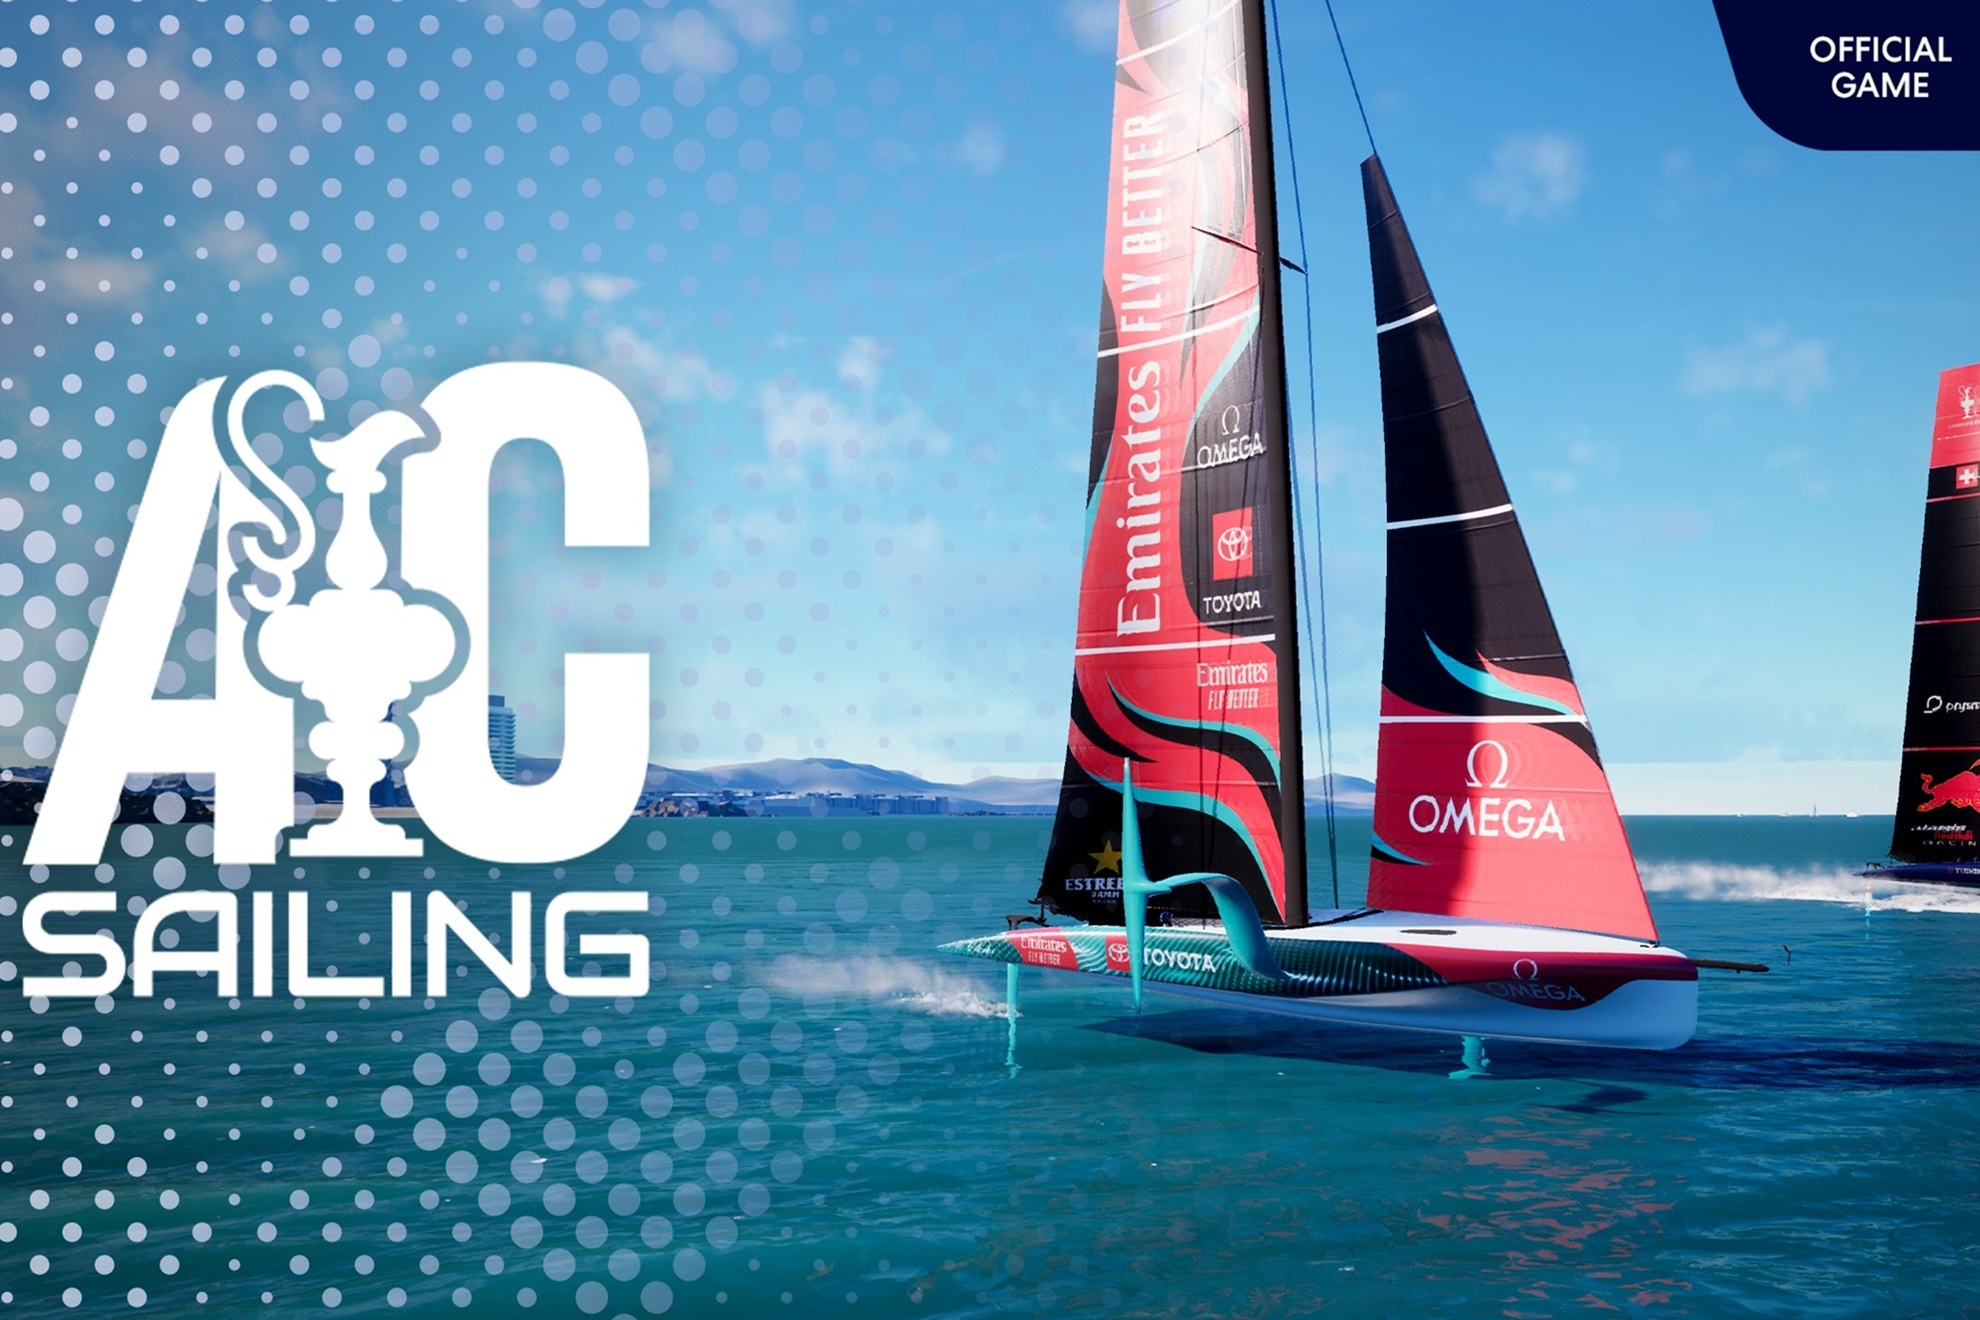 Las regatas llegan a los videojuegos y a los eSports: As es el AC Sailing y la Americas Cup E-series